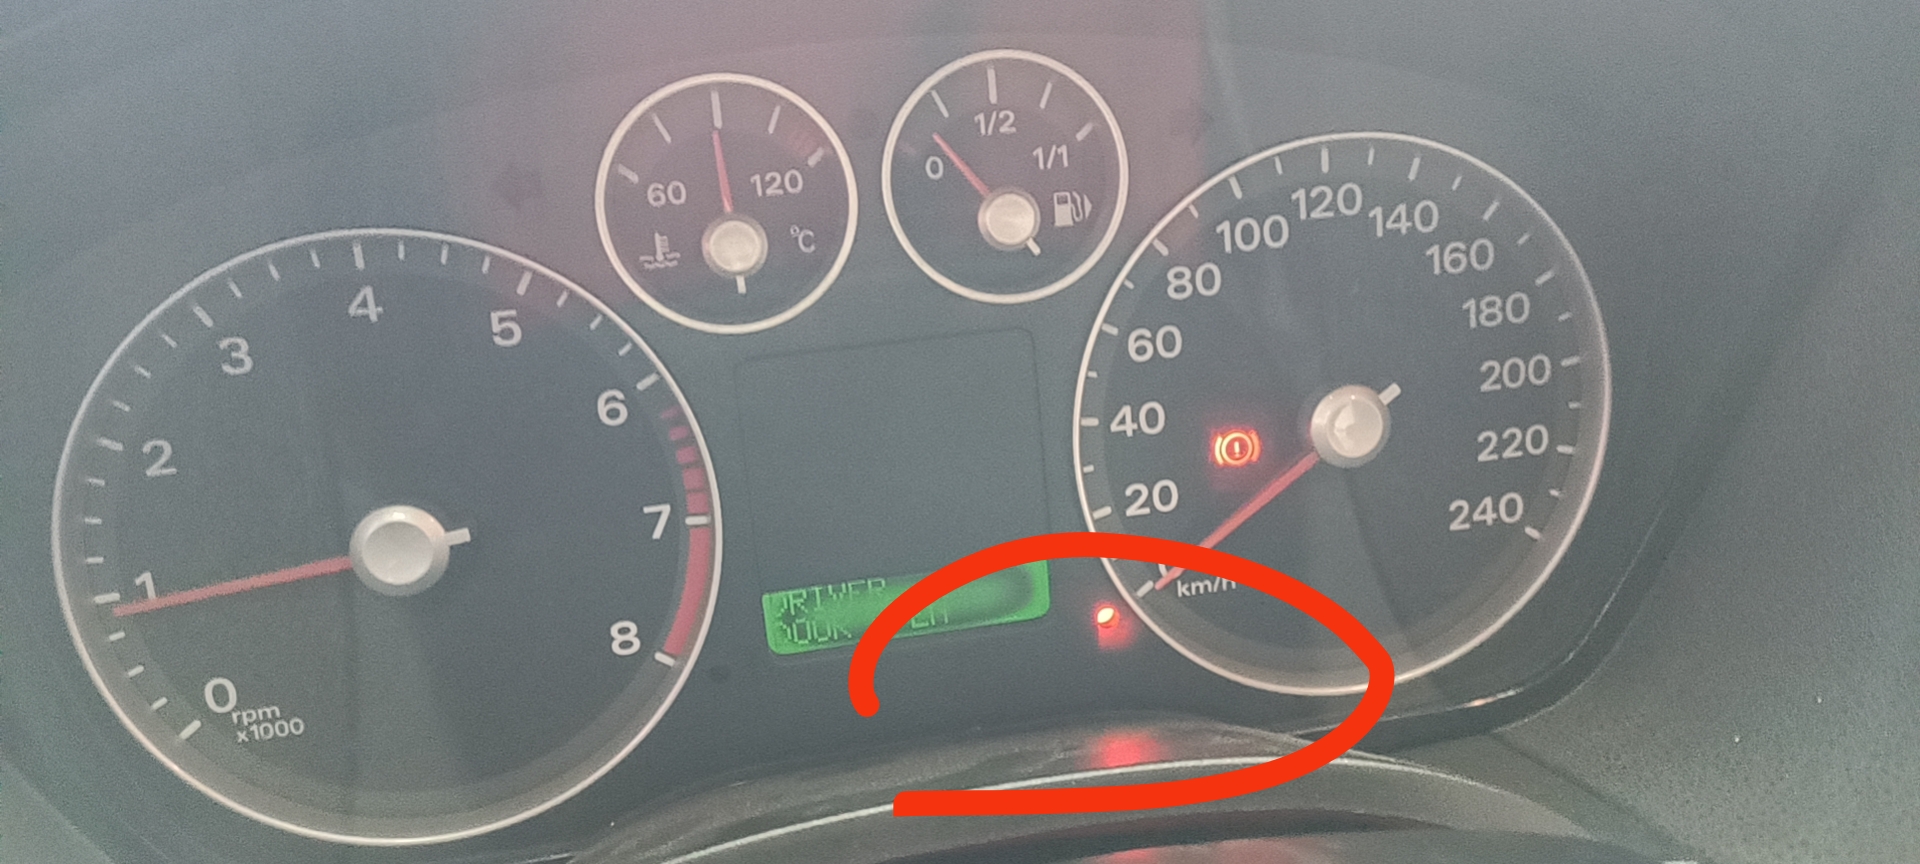 06福克斯仪表右边小红点常亮是什么意思呢   客户反应行车不会自动